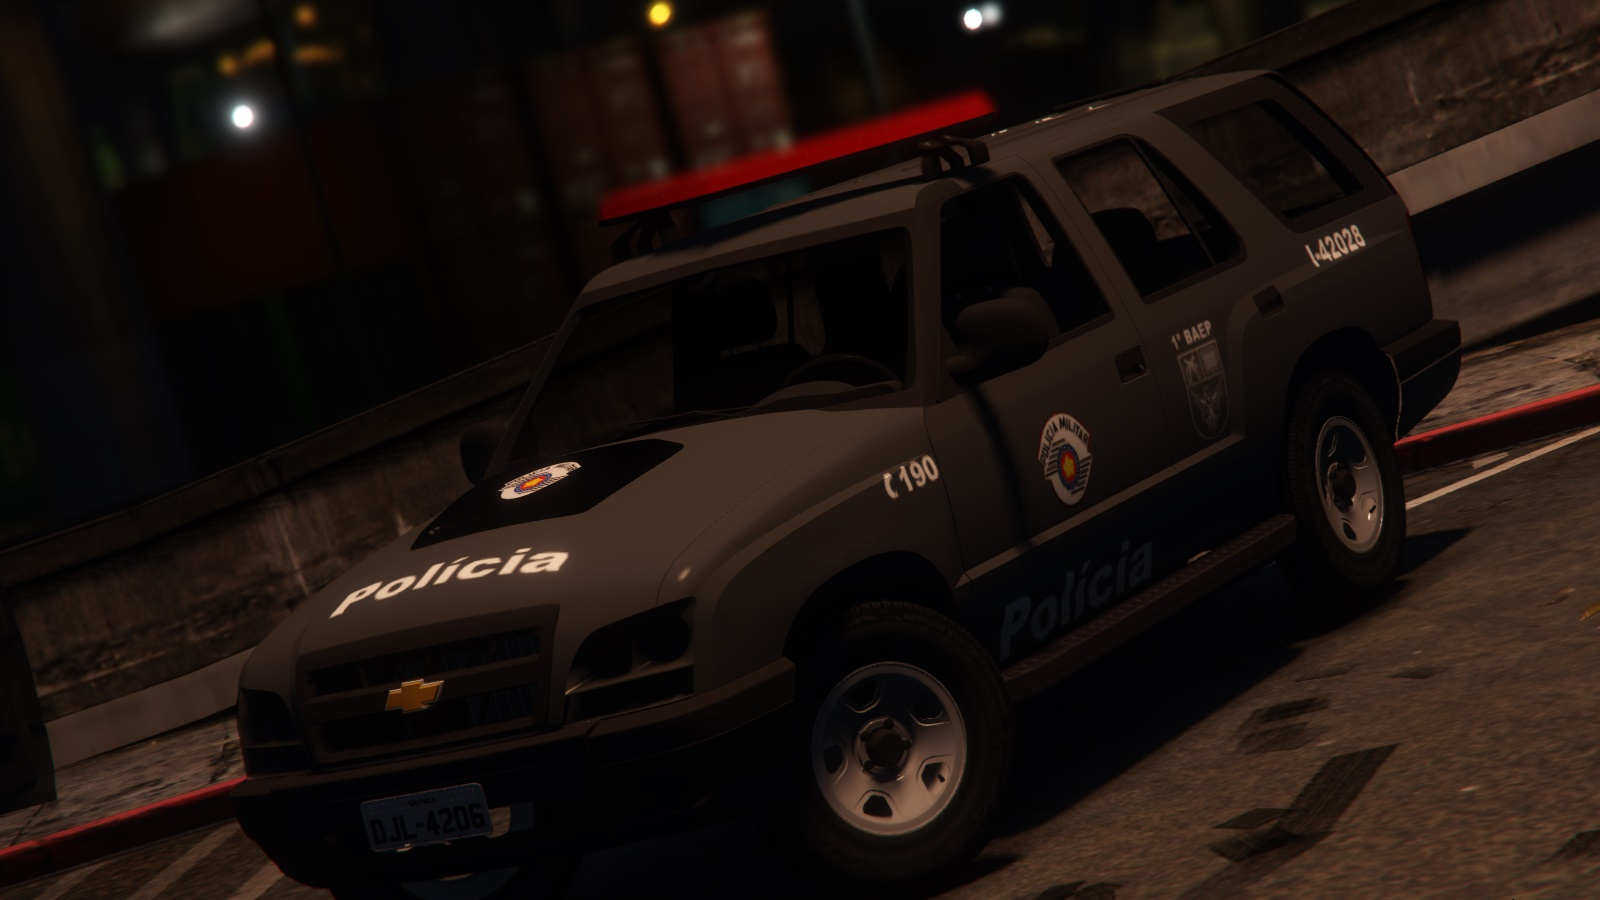 GTA V - Blazer Policia Militar SP - GTA5-Mods.com